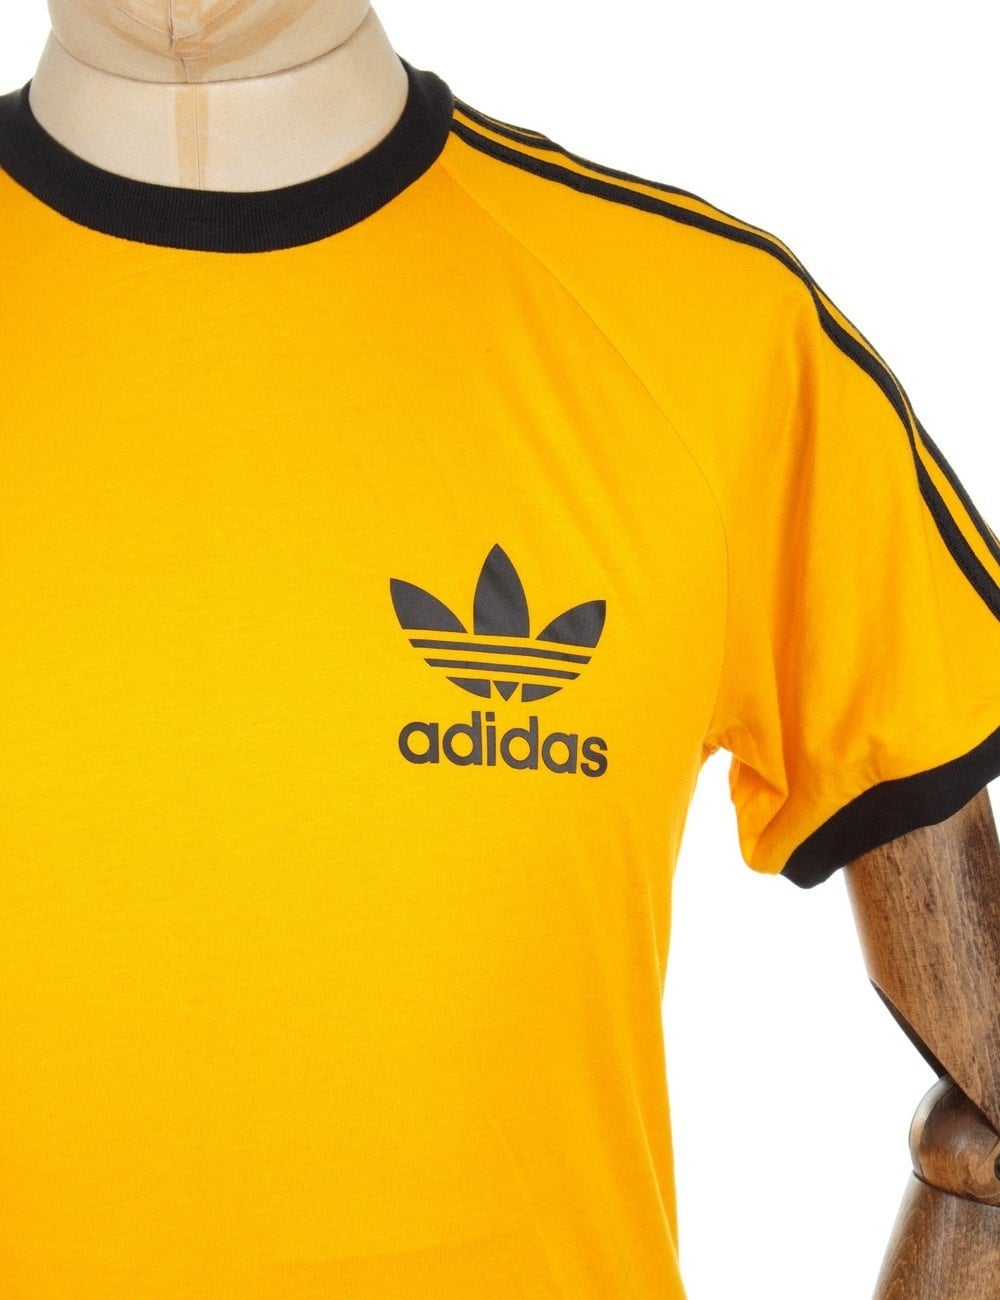 Adidas Shirt Gold Logos